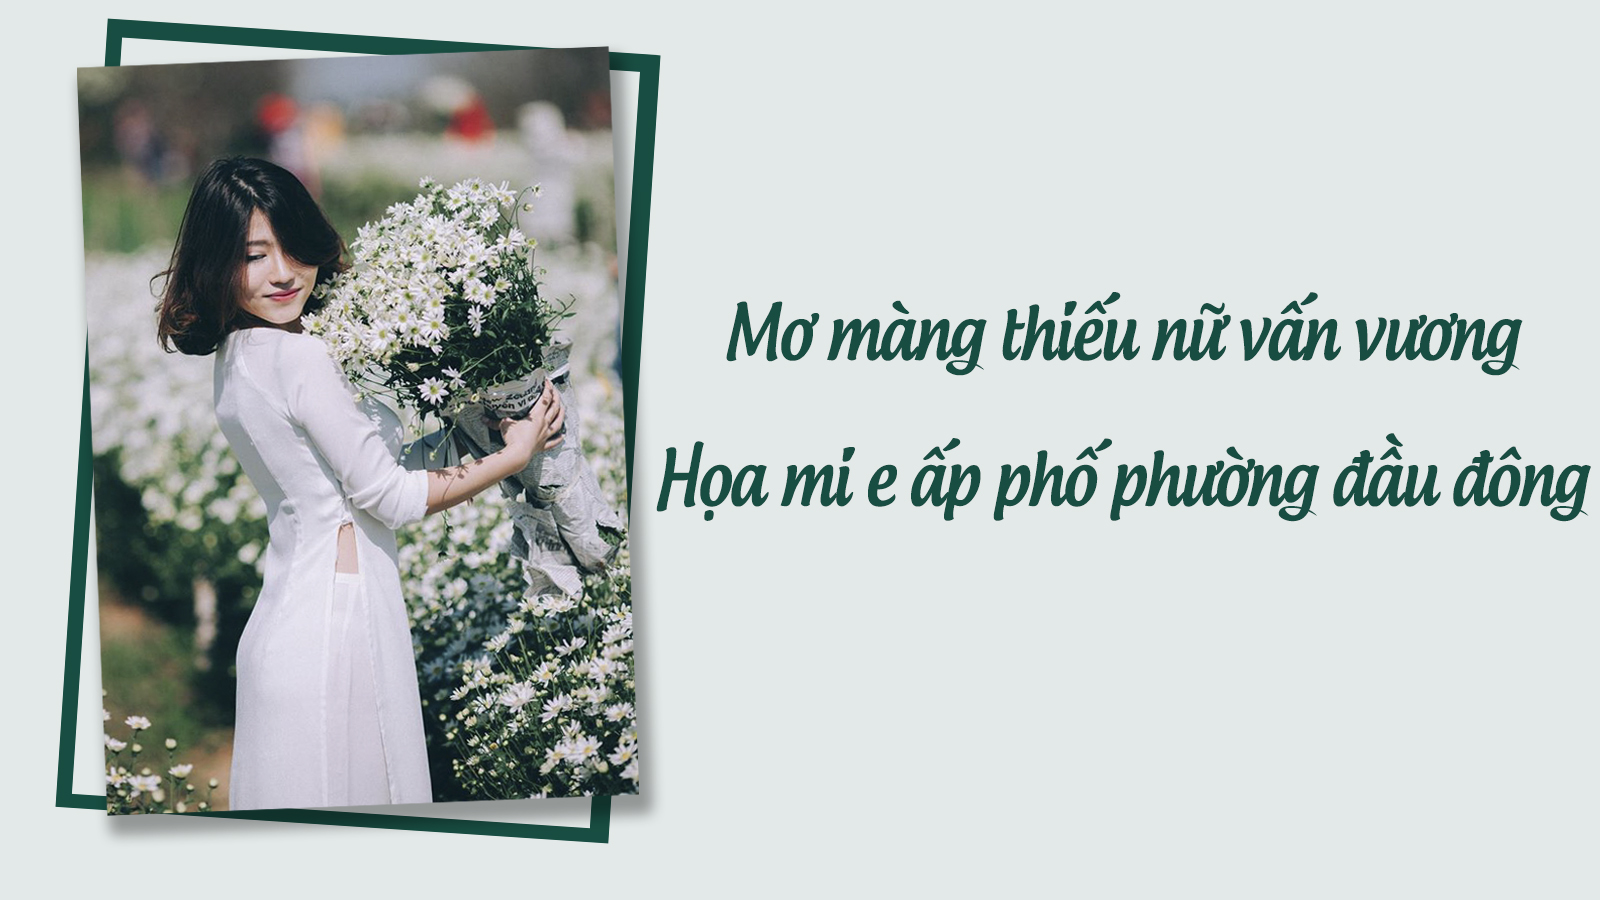 5 địa điểm chụp hoa cúc ở Hà Nội và cách tạo dáng chụp hoa cúc 'chuẩn không cần chỉnh' 0